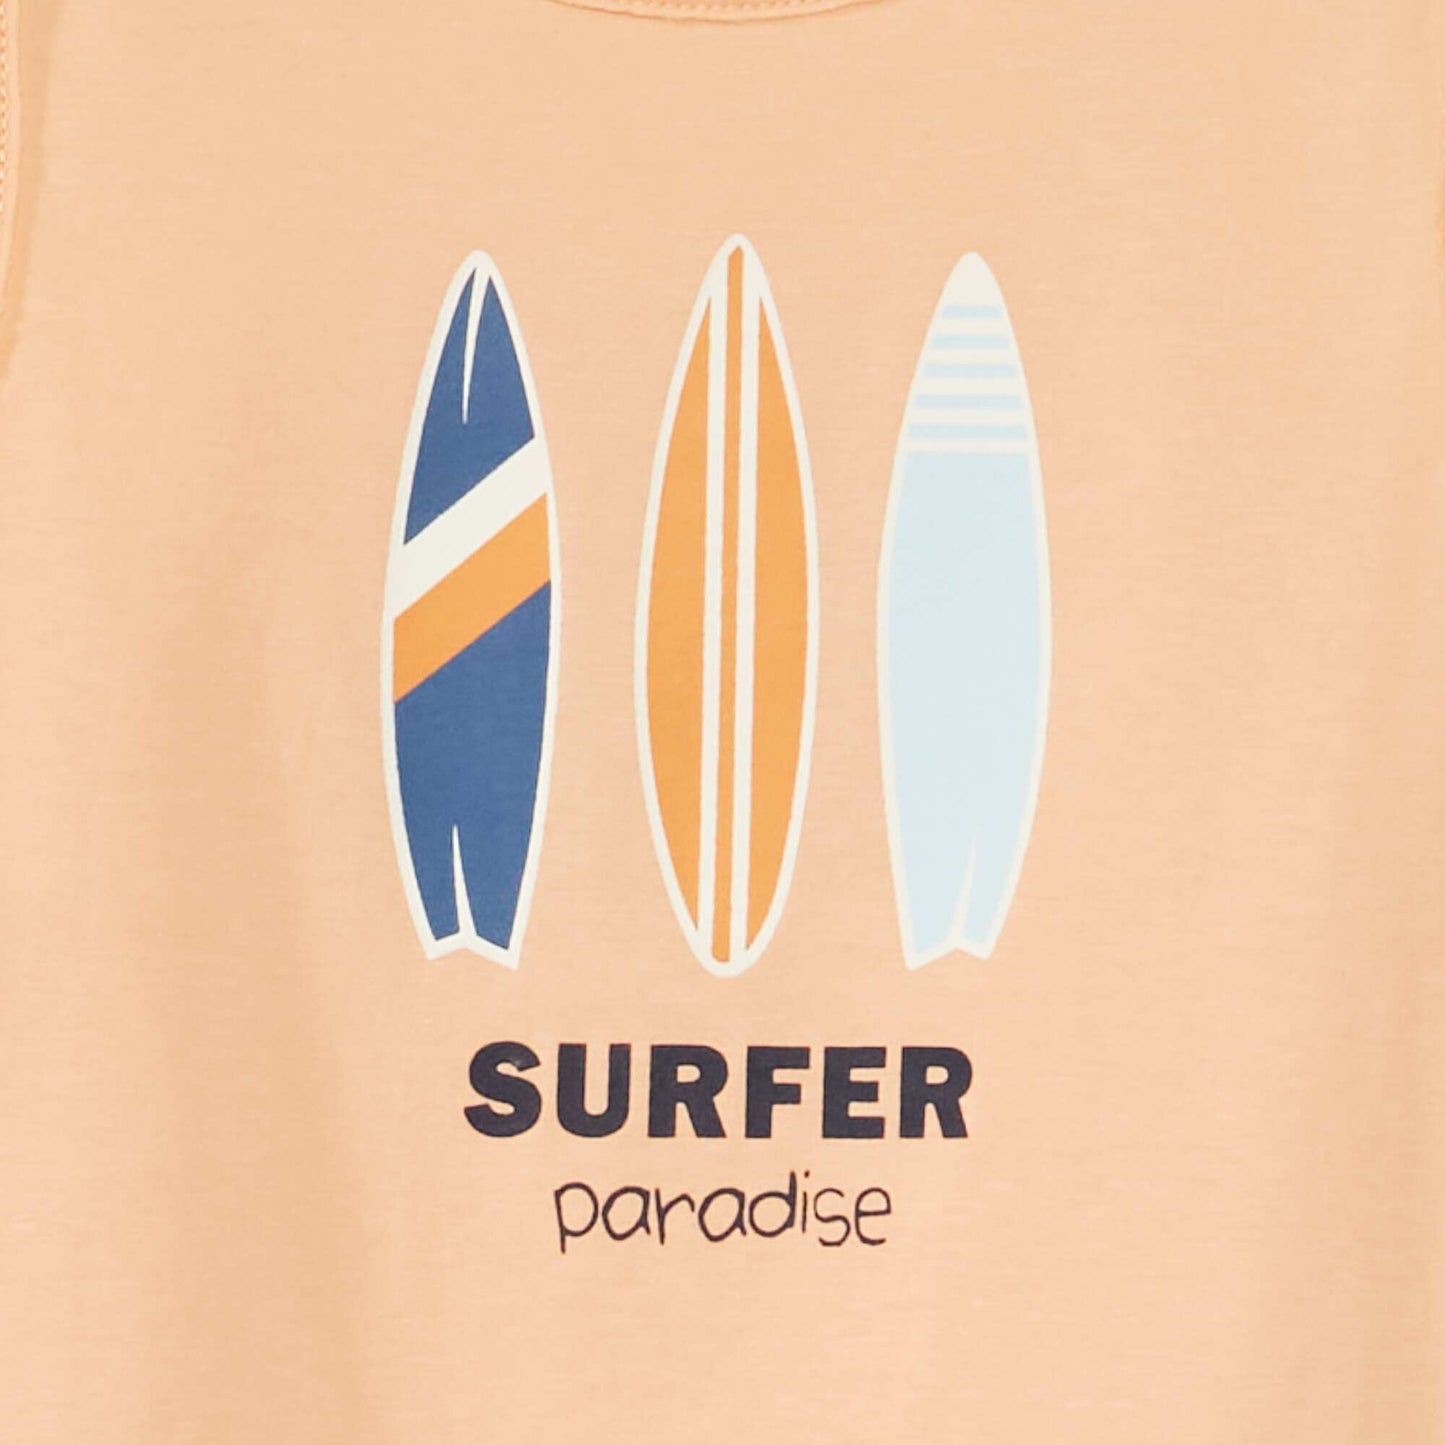 Pijama 'surf' corto + camiseta sin mangas - 2 piezas NARANJA